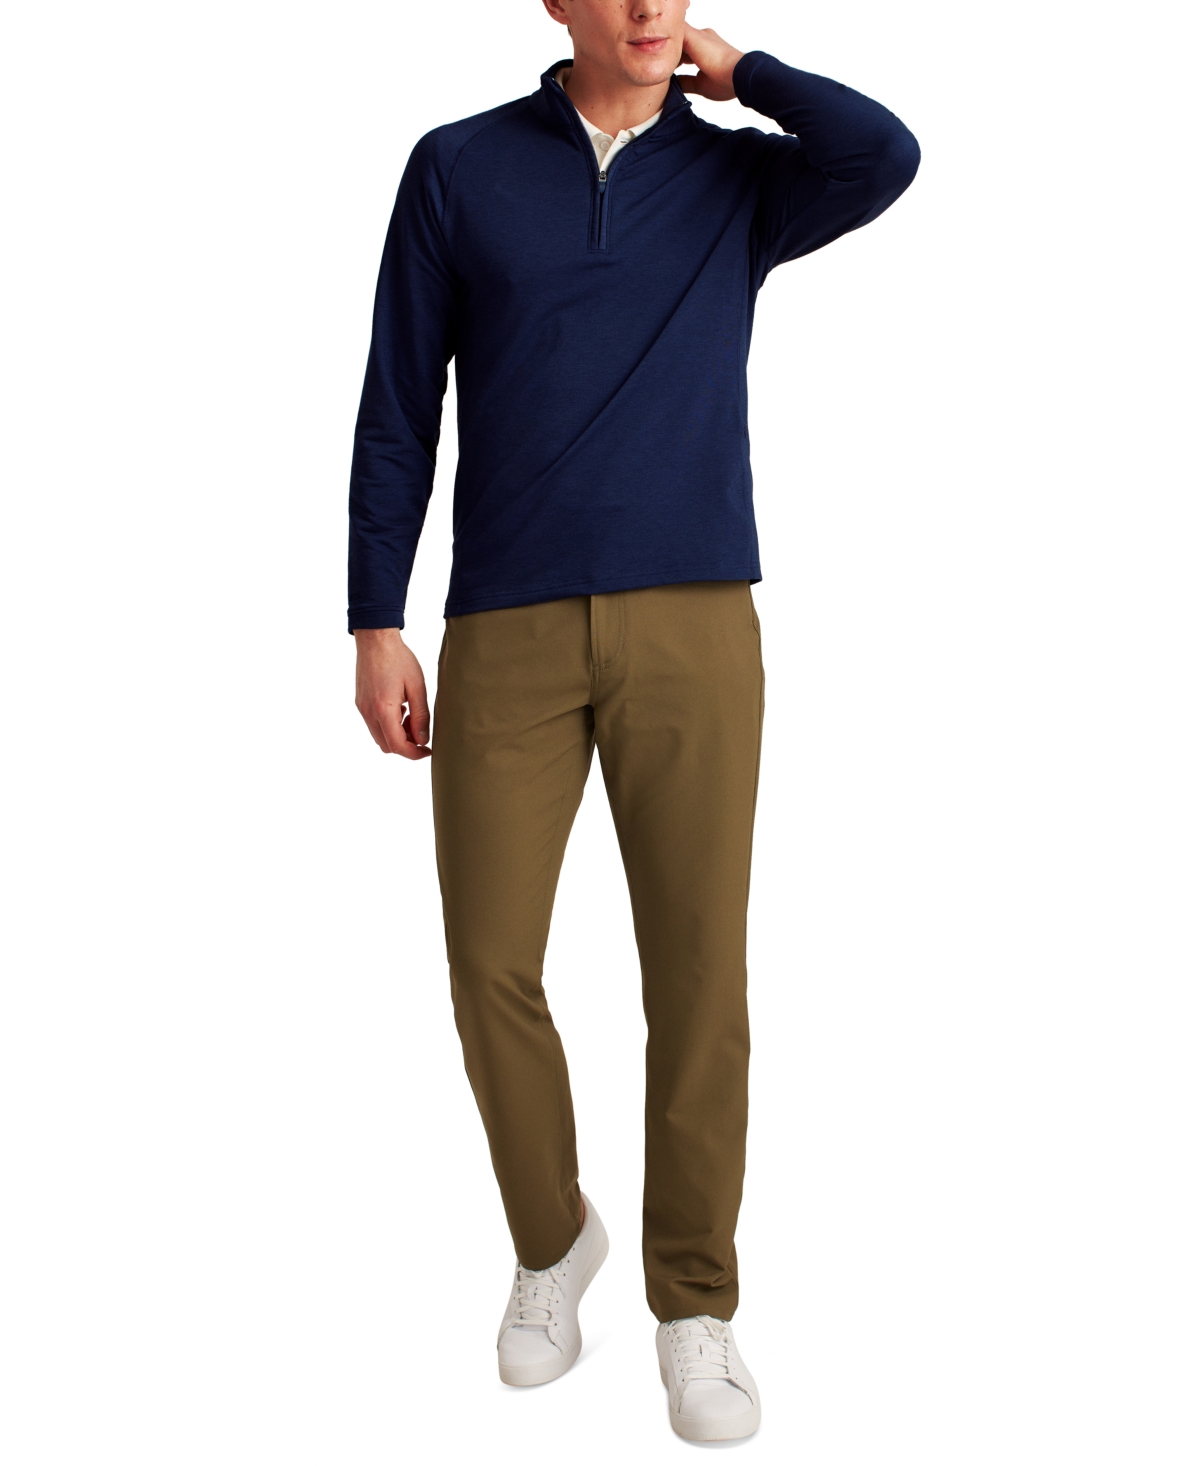 Men's Long Sleeve Half-Zip Pullover Sweatshirt - Navy Blaze